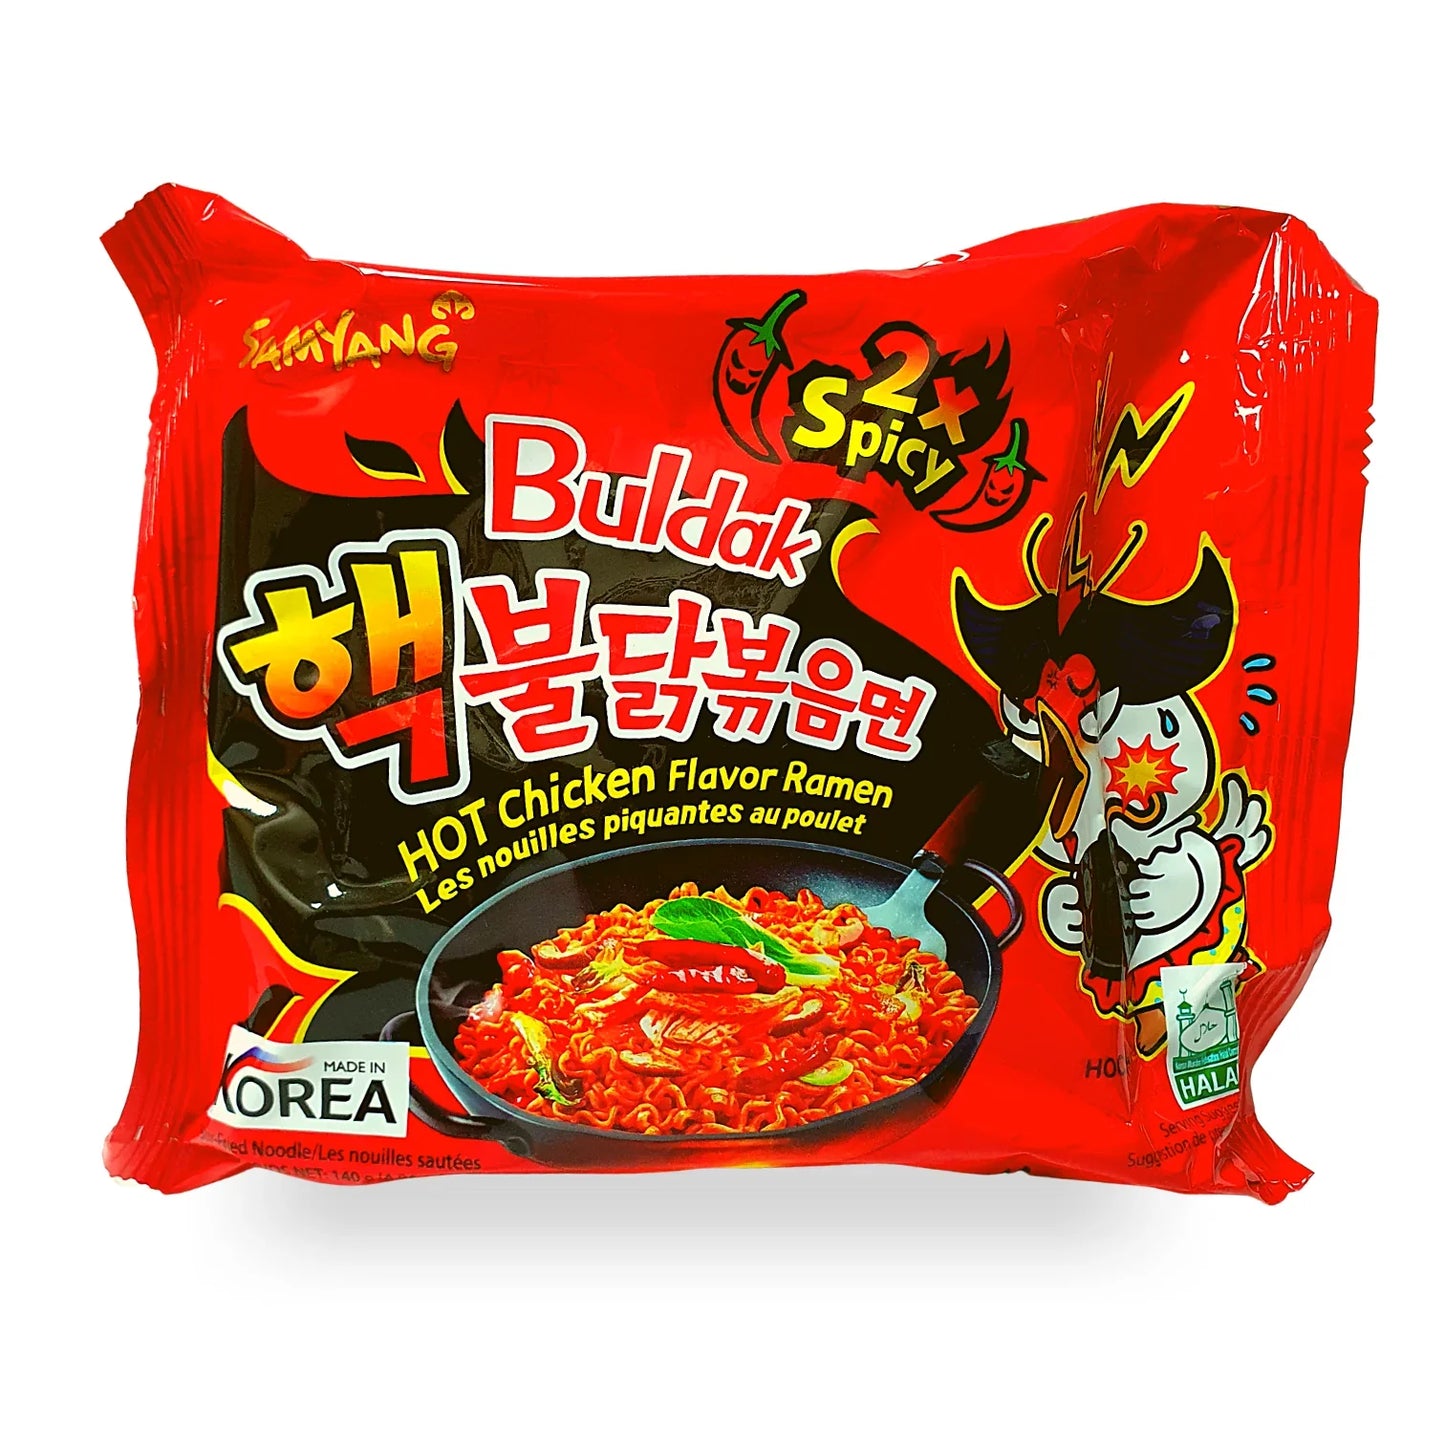 Samyang Buldak 2X Spicy Hot Chicken Flavour Ramen 180g